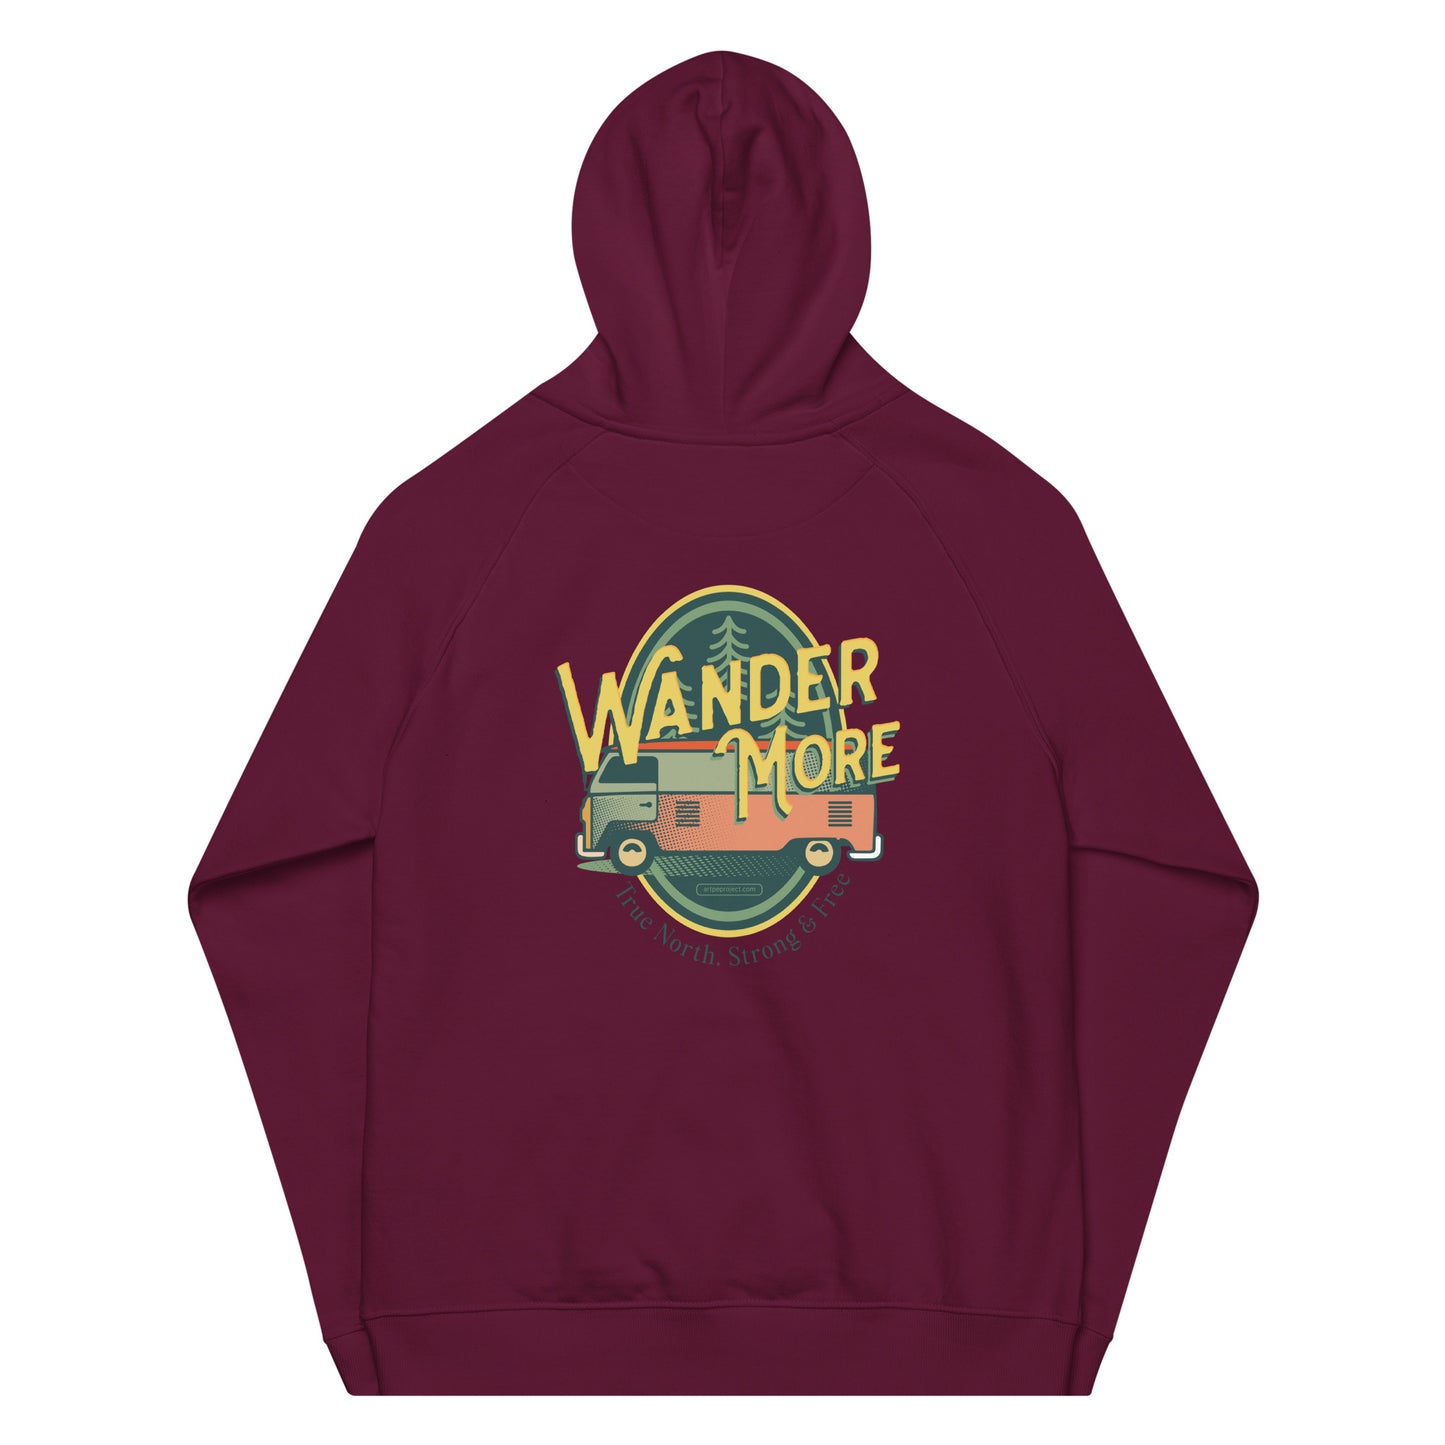 The Wander More Van Hoodie